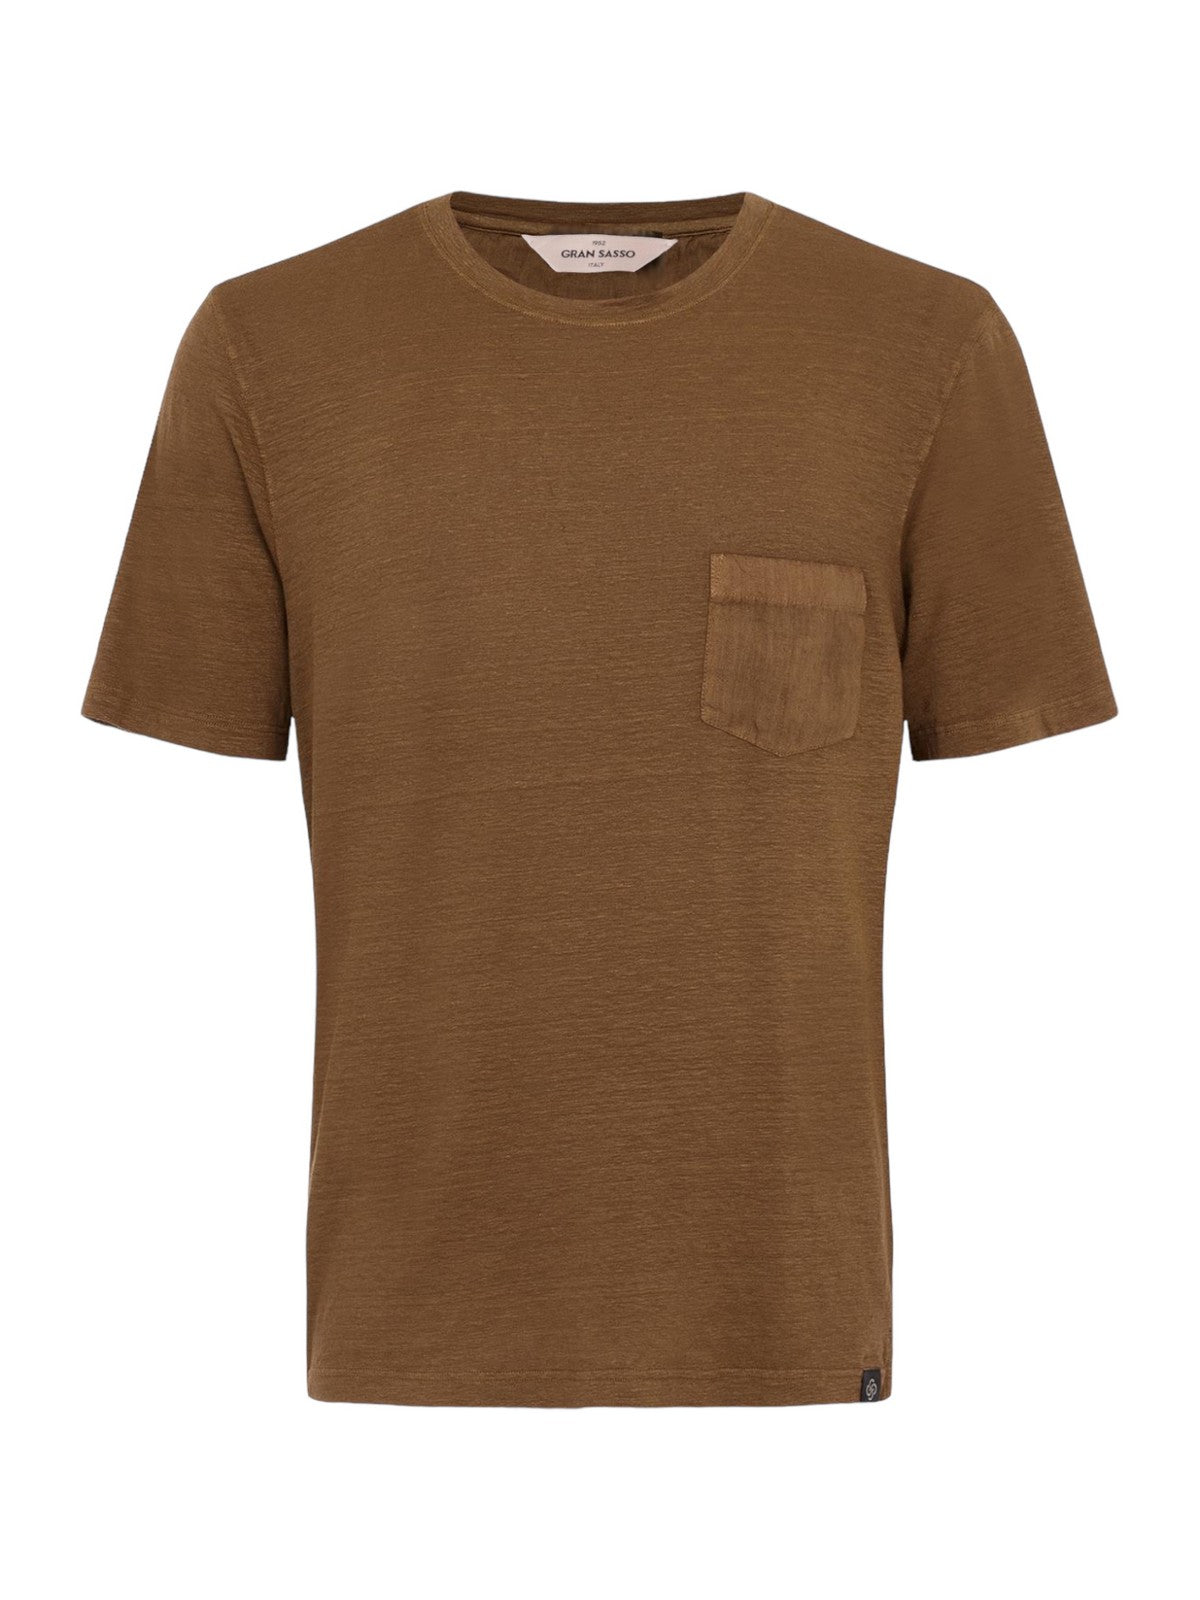 GRAN SASSO T-Shirt e Polo Uomo  60141/78616 157 Marrone